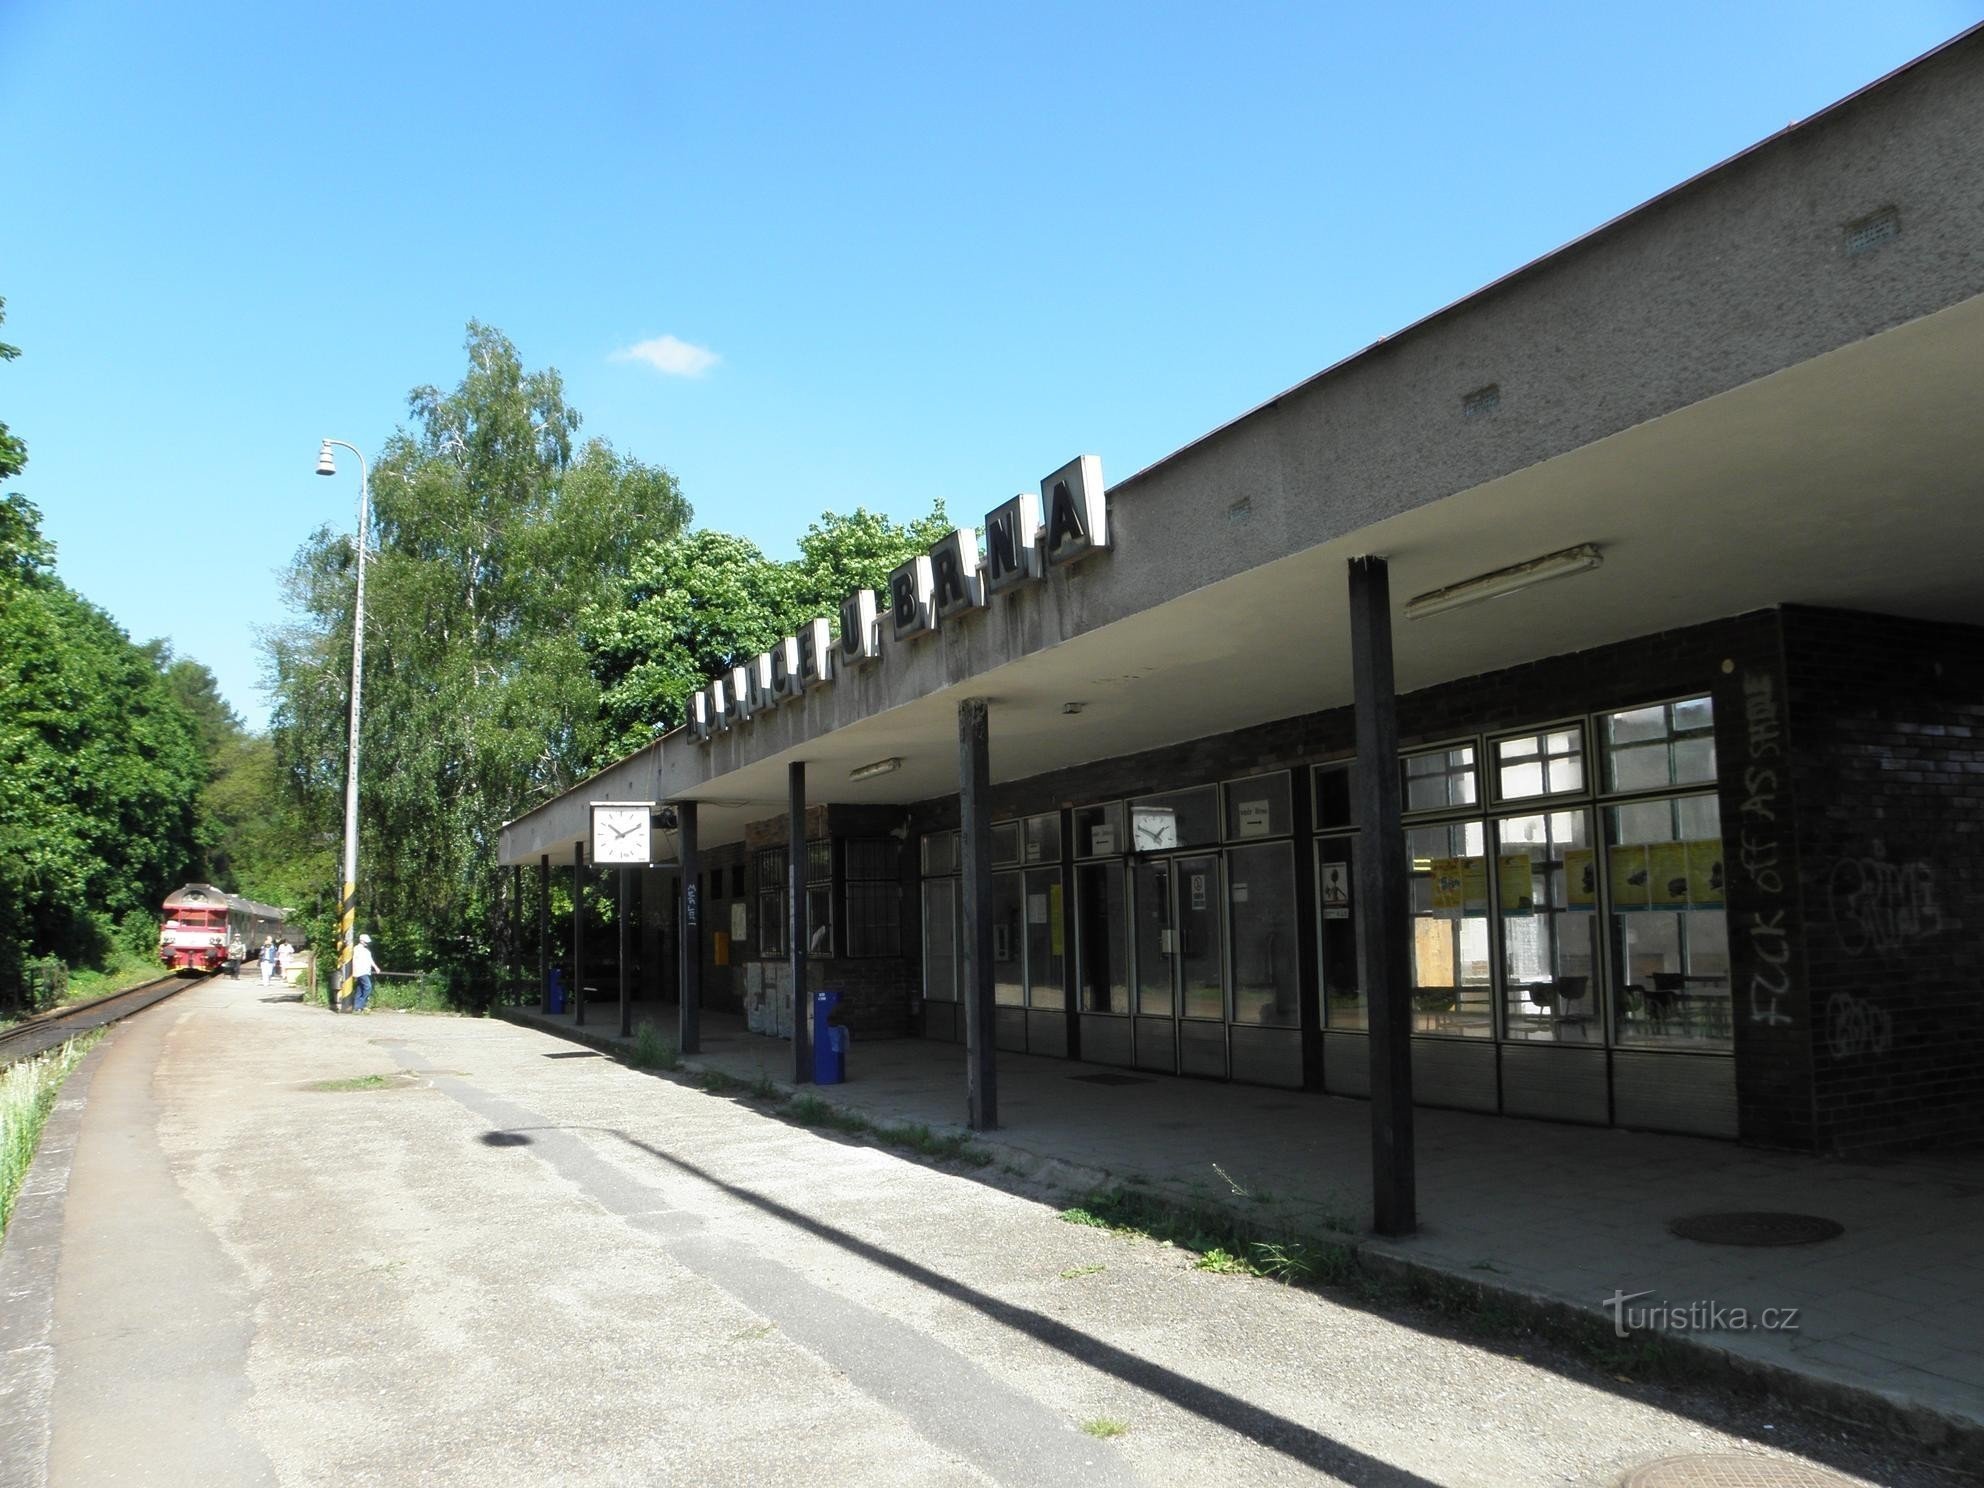 Dworzec kolejowy Rosice k. Brna - 18.5.2011 maja XNUMX r.